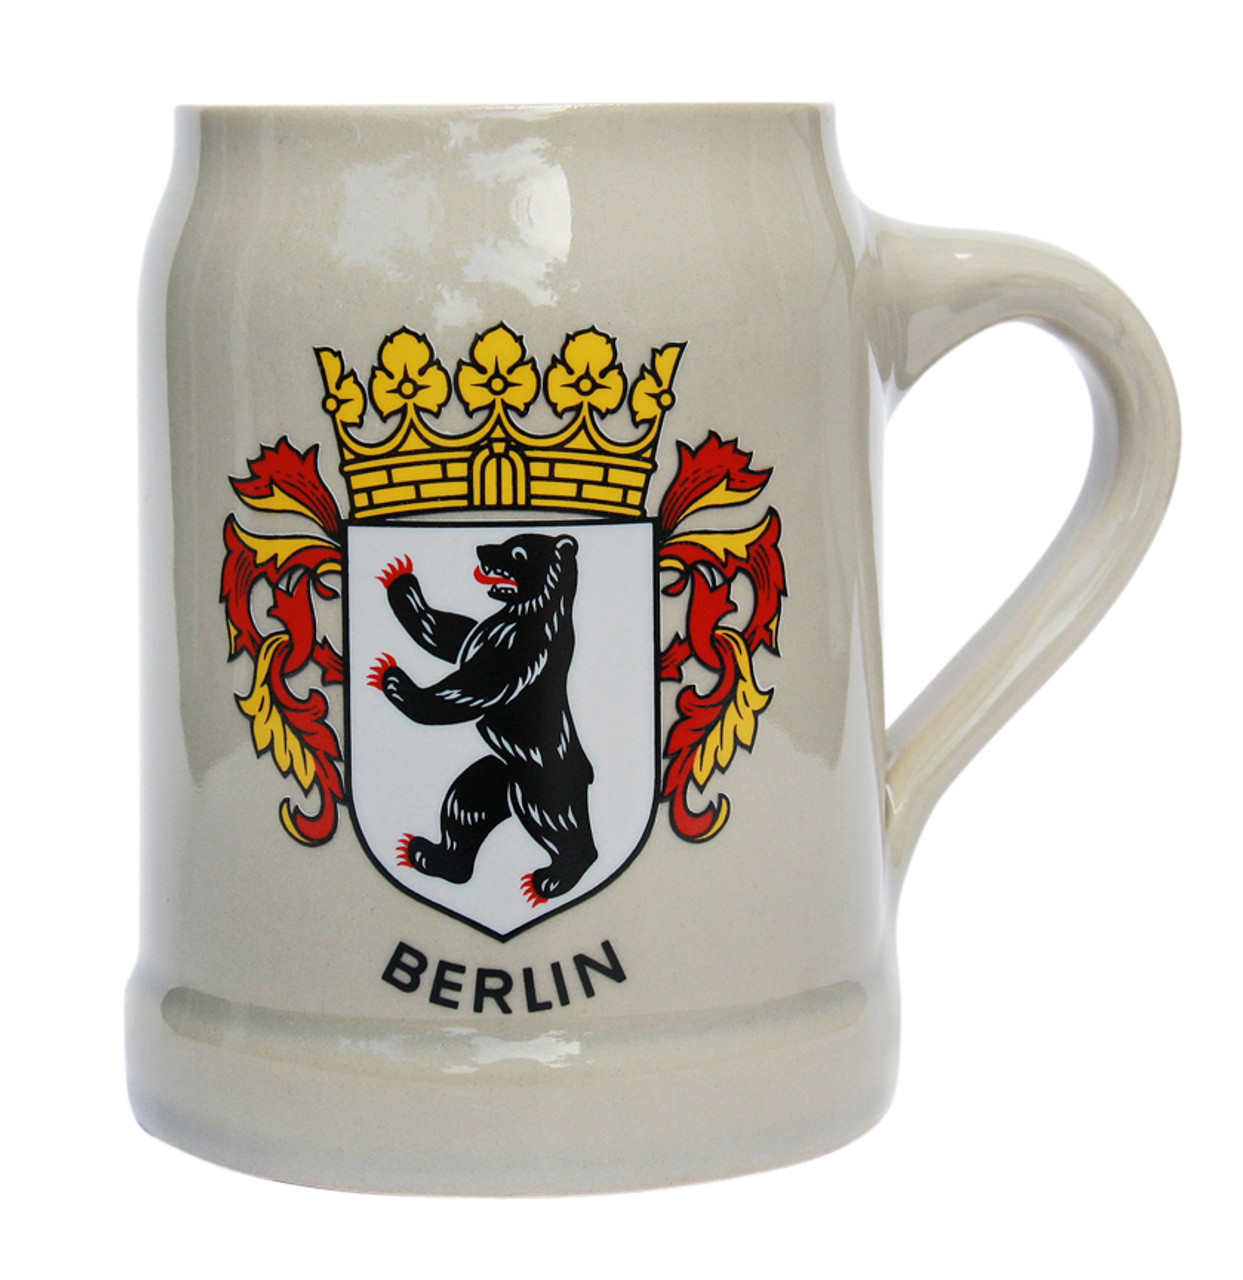 Berlin German Stoneware Beer Mug 0.5 Liter